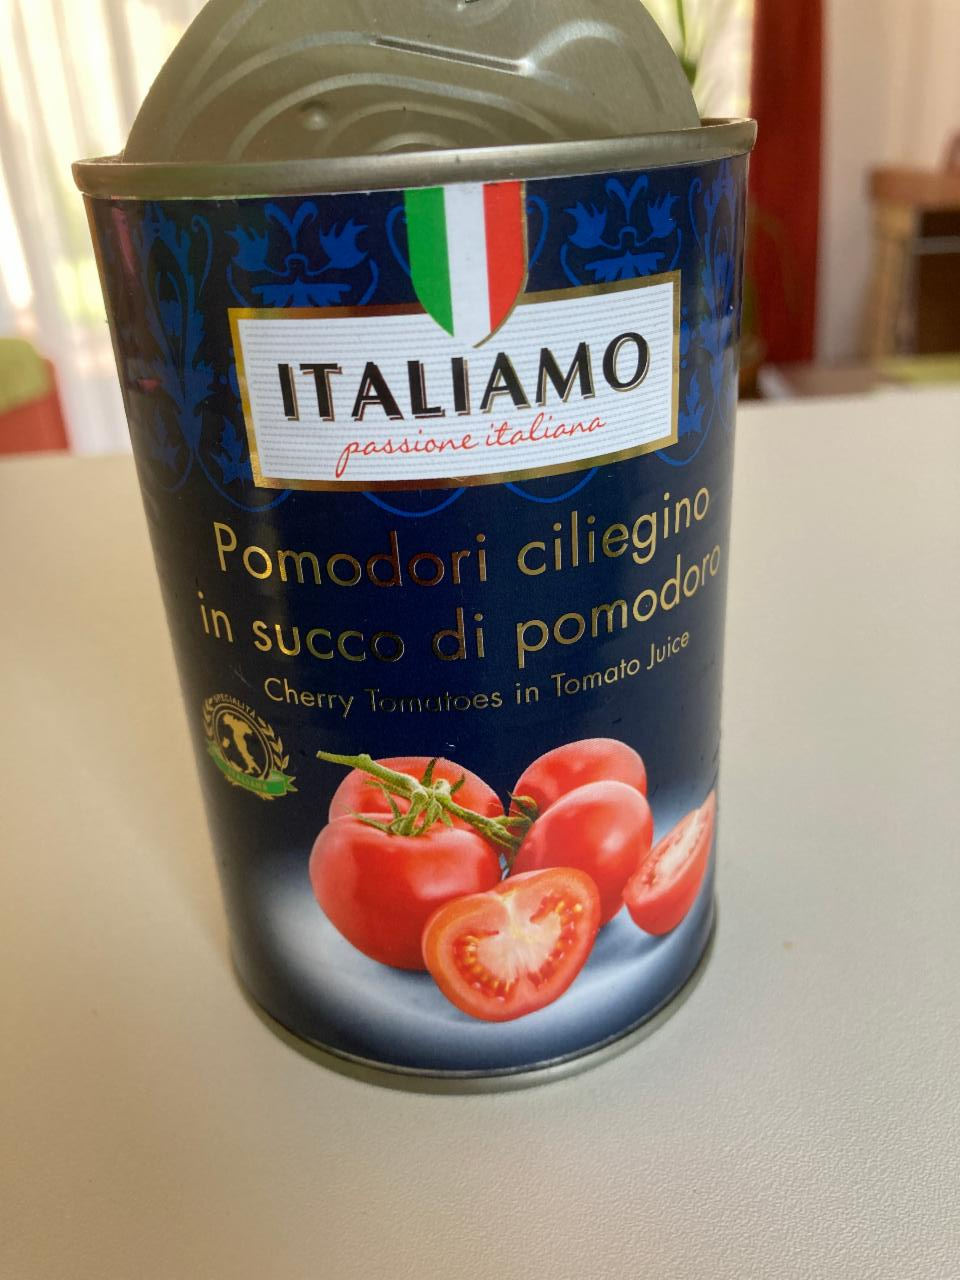 Фото - Помидоры консервированные в томатном соусе Italiamo